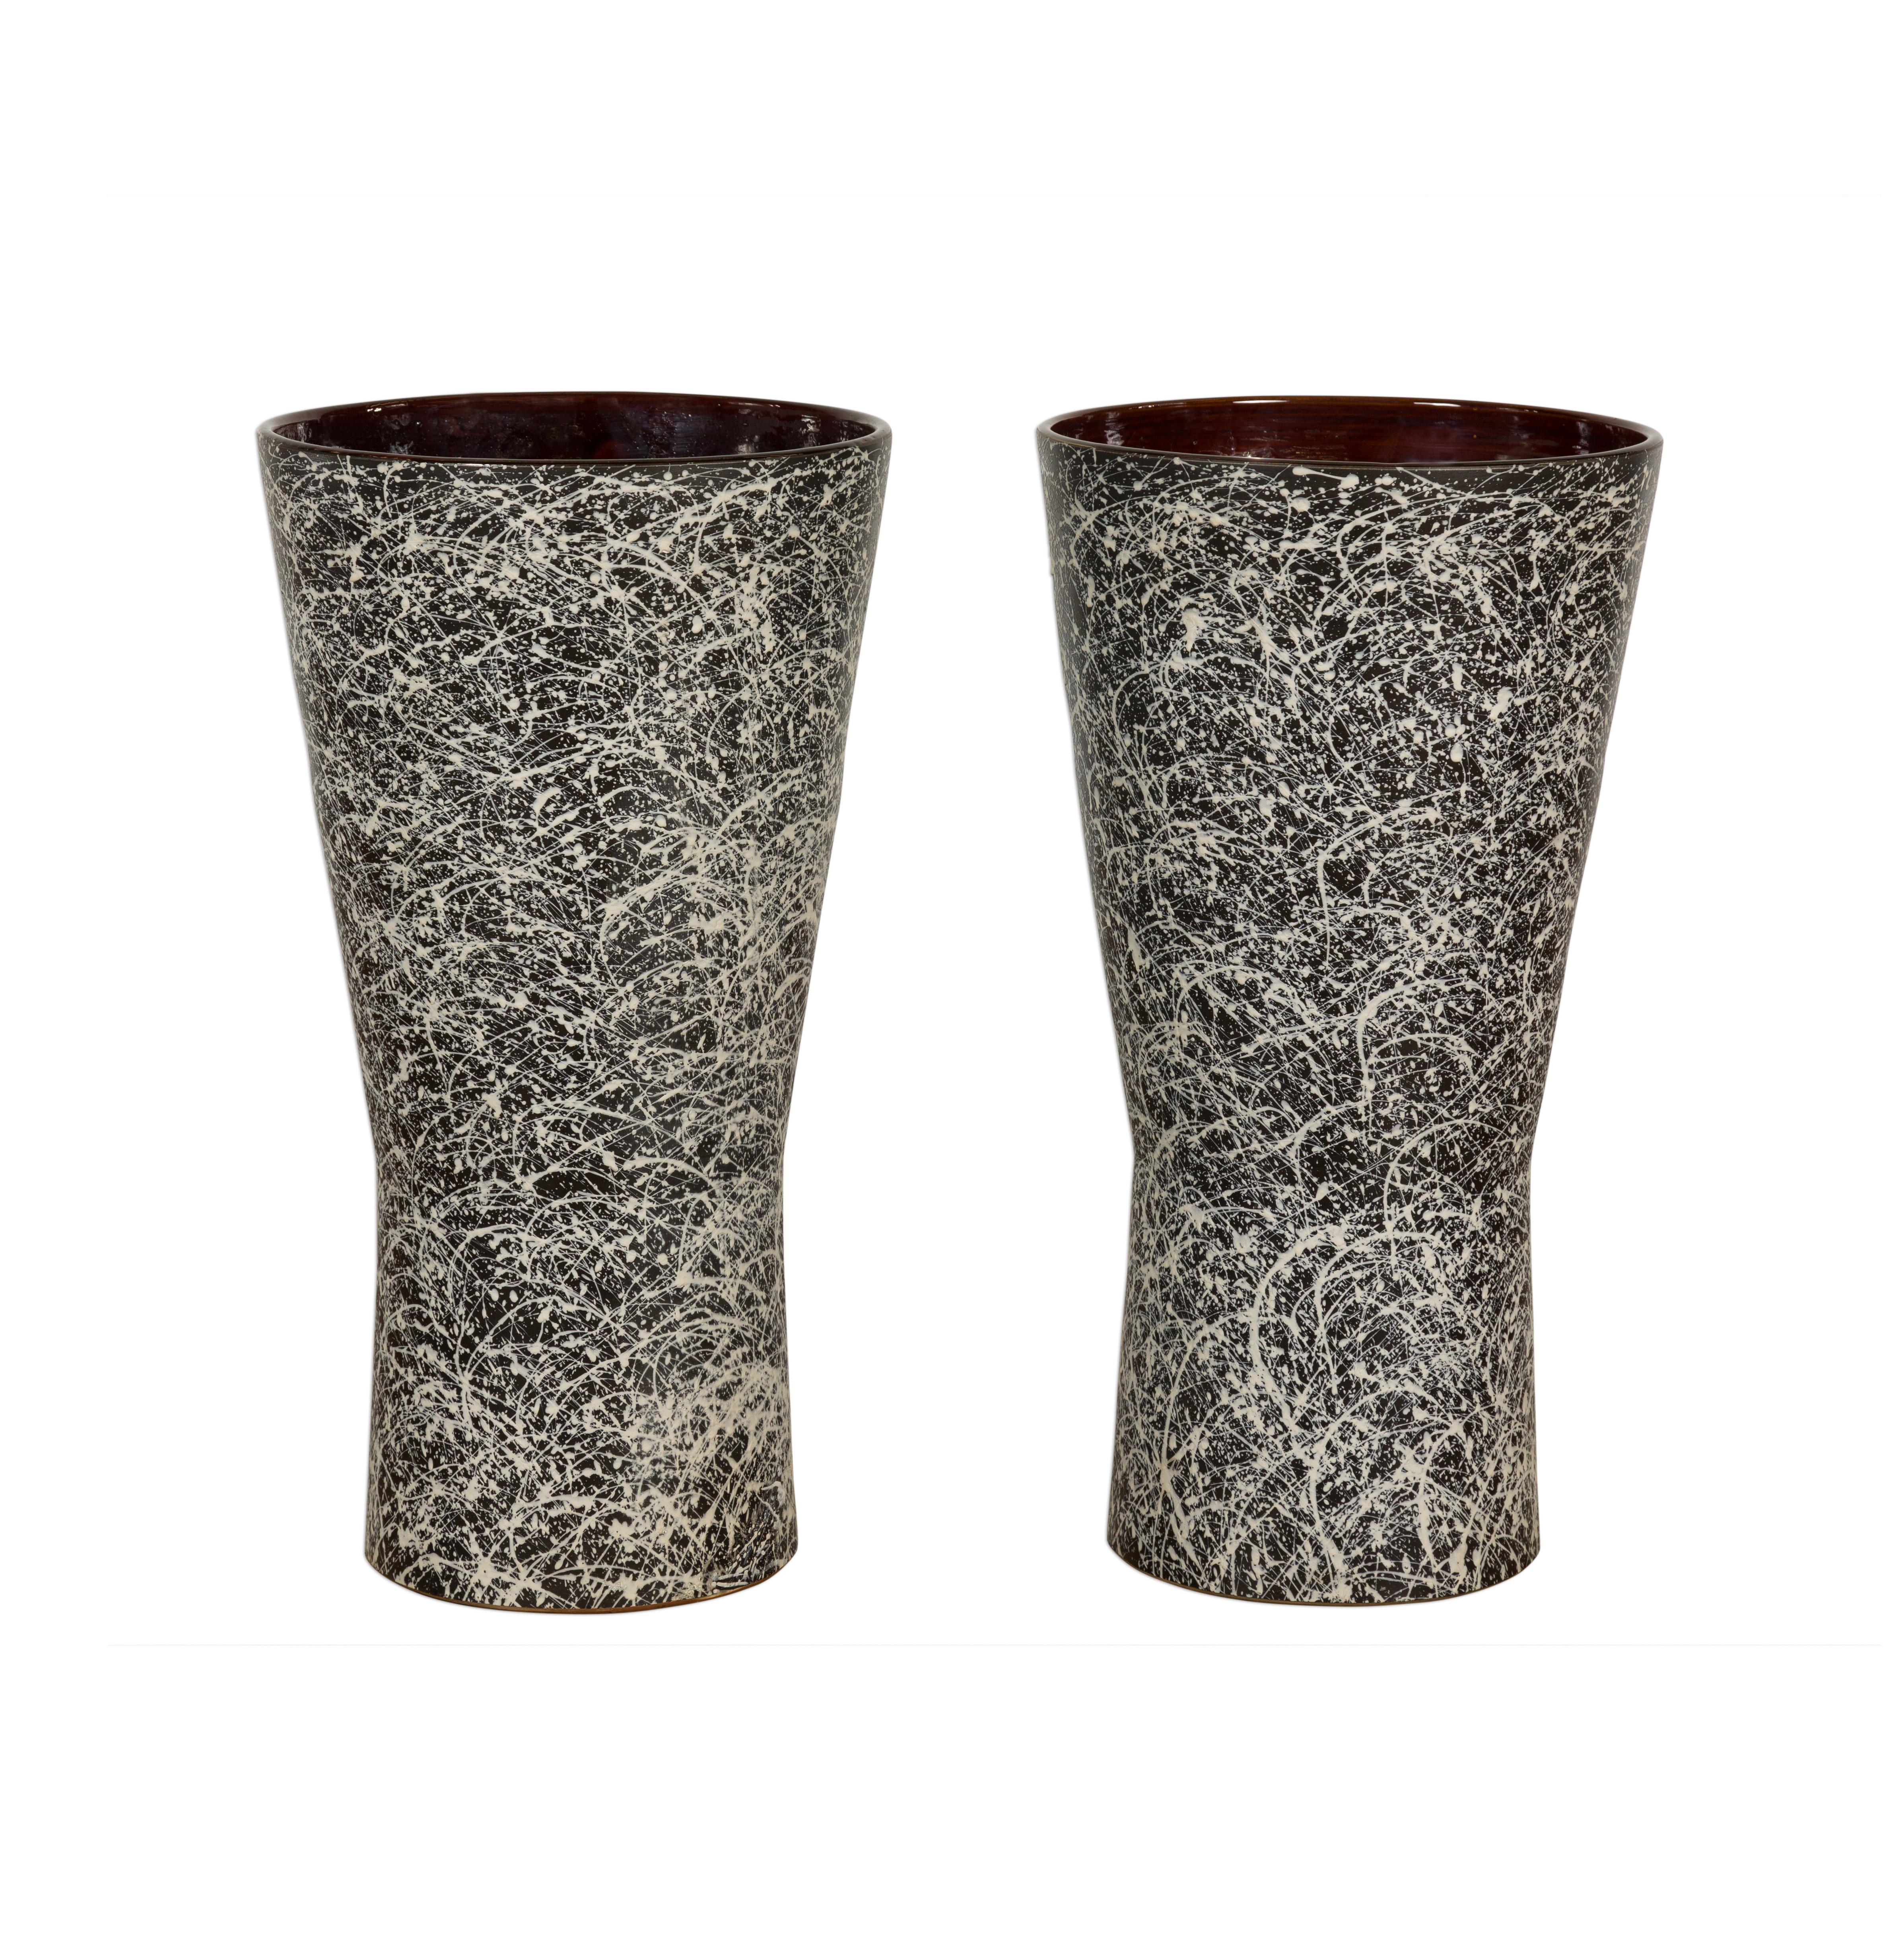 Pair of Textured Black & White Spattered Ceramic Vases For Sale 15